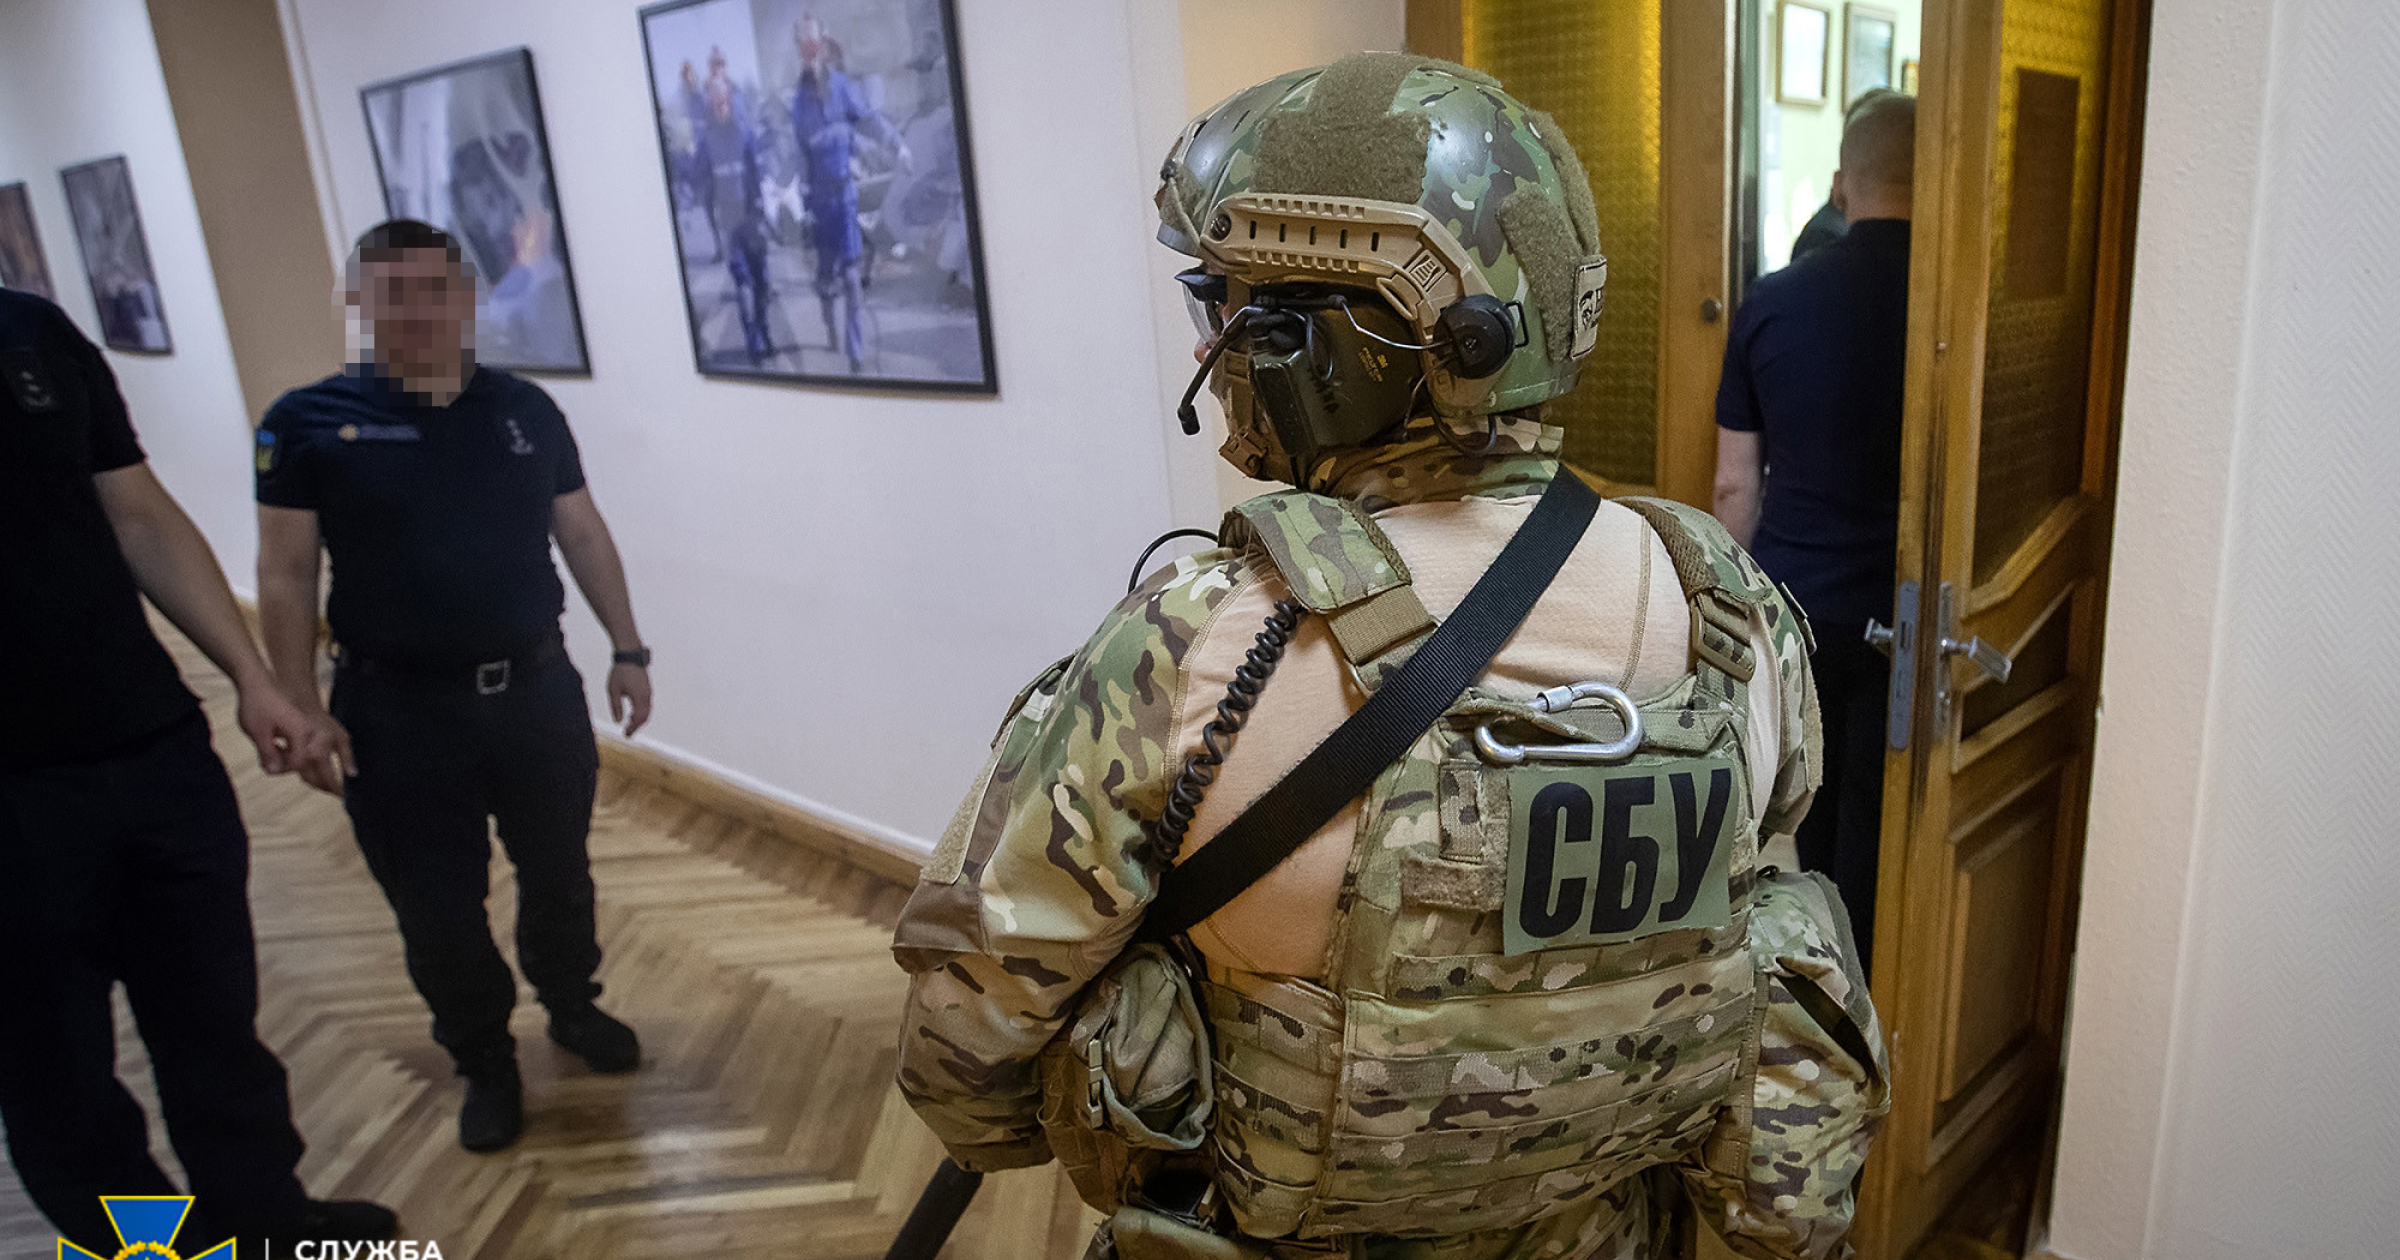 Служба безпеки України викрила корупційну схему в Державній службі з надзвичайних ситуацій, на якій учасники щомісячно заробляли понад 10 млн грн